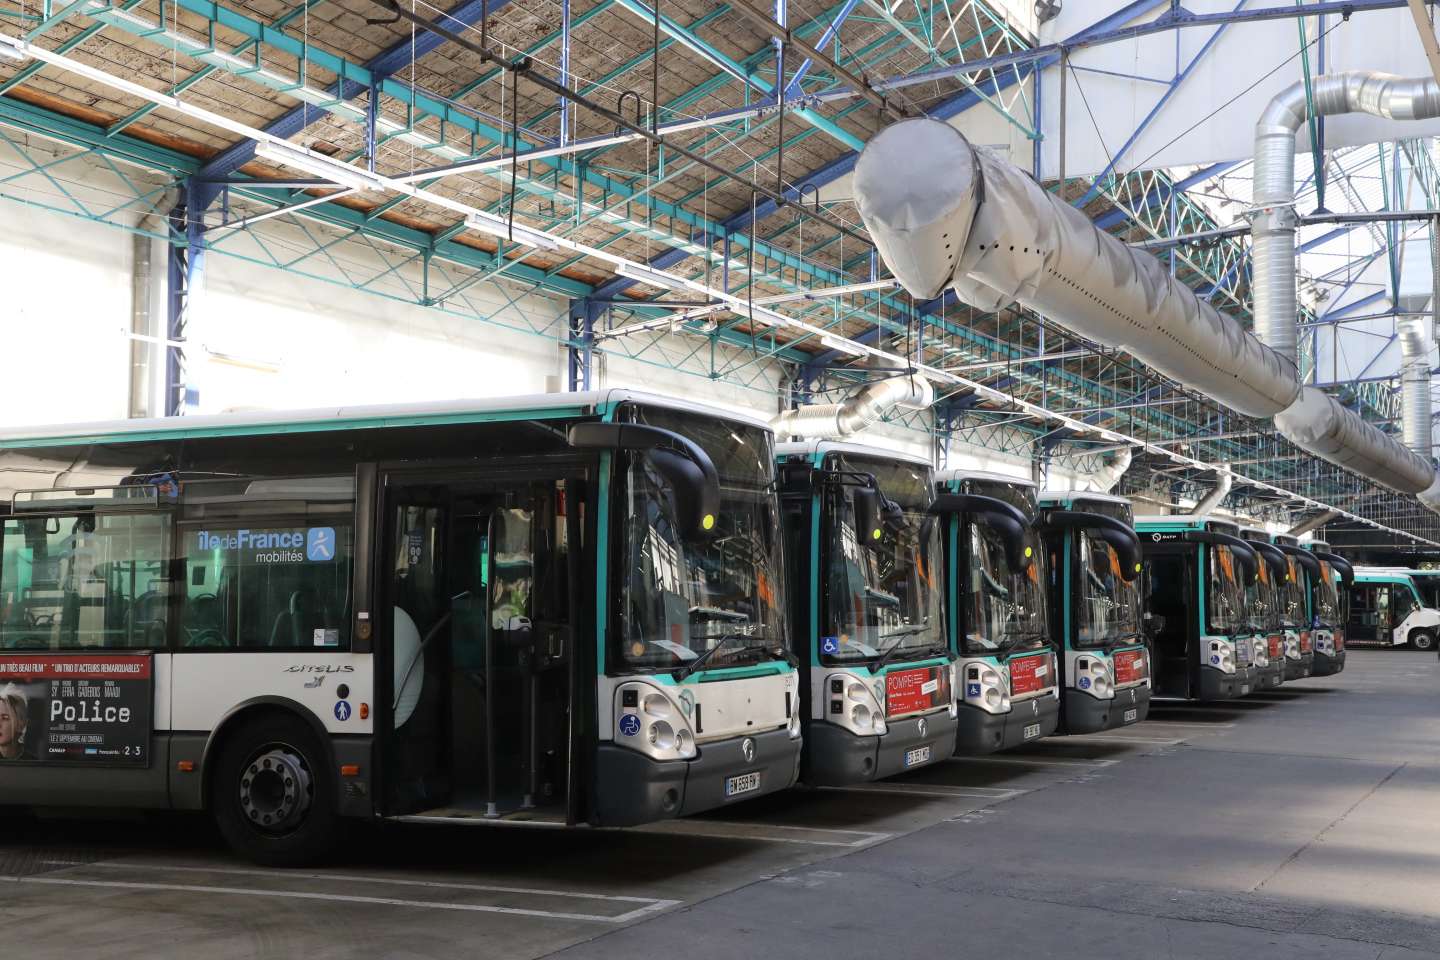 le report à 2026 de l’ouverture à la concurrence des bus parisiens voté en commission à l’Assemblée nationale